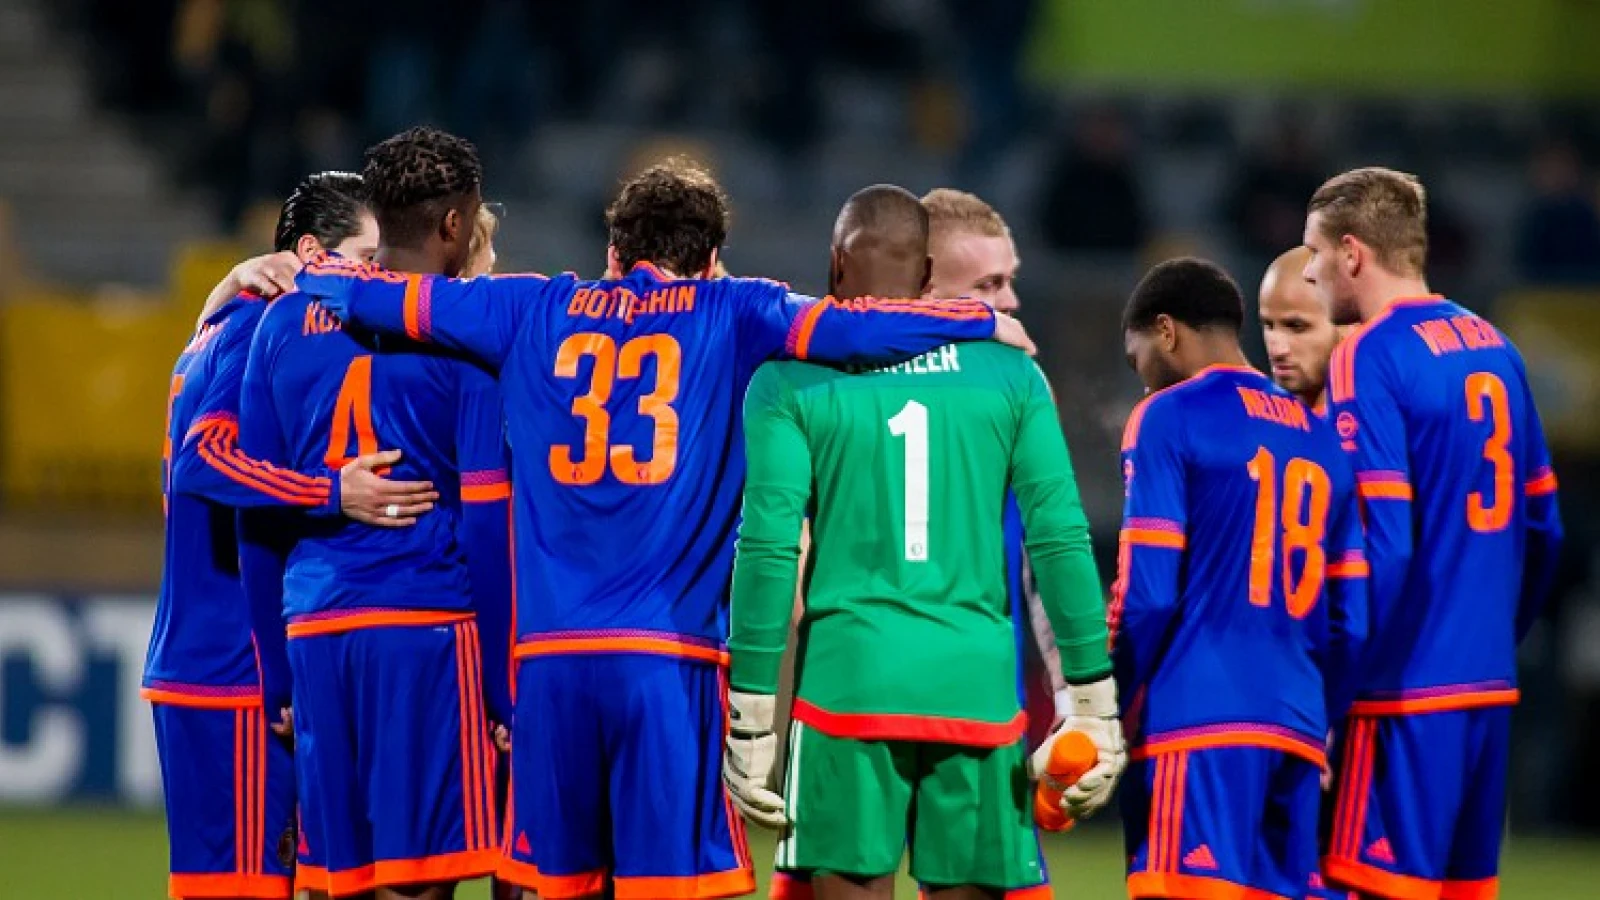 Mogelijke tegenstanders van Feyenoord in de halve finale KNVB beker